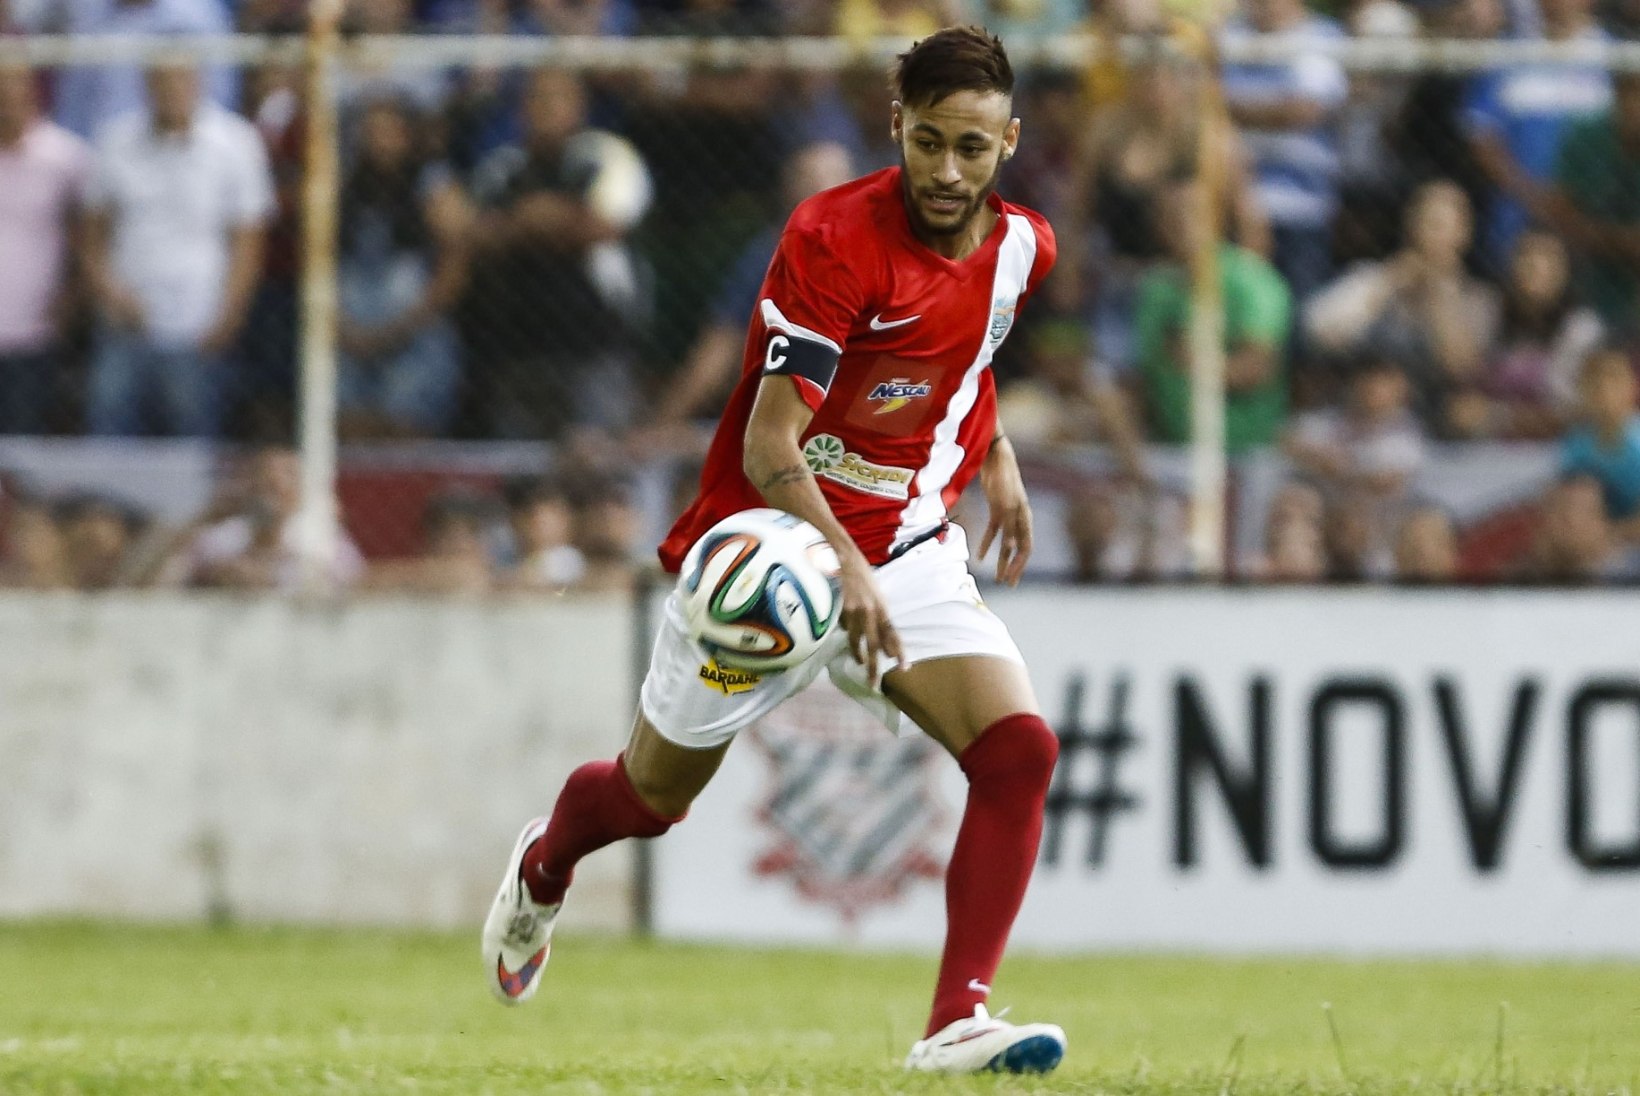 VIDEO: Neymarile jäid heategevusmängu järel alles vaid aluspüksid